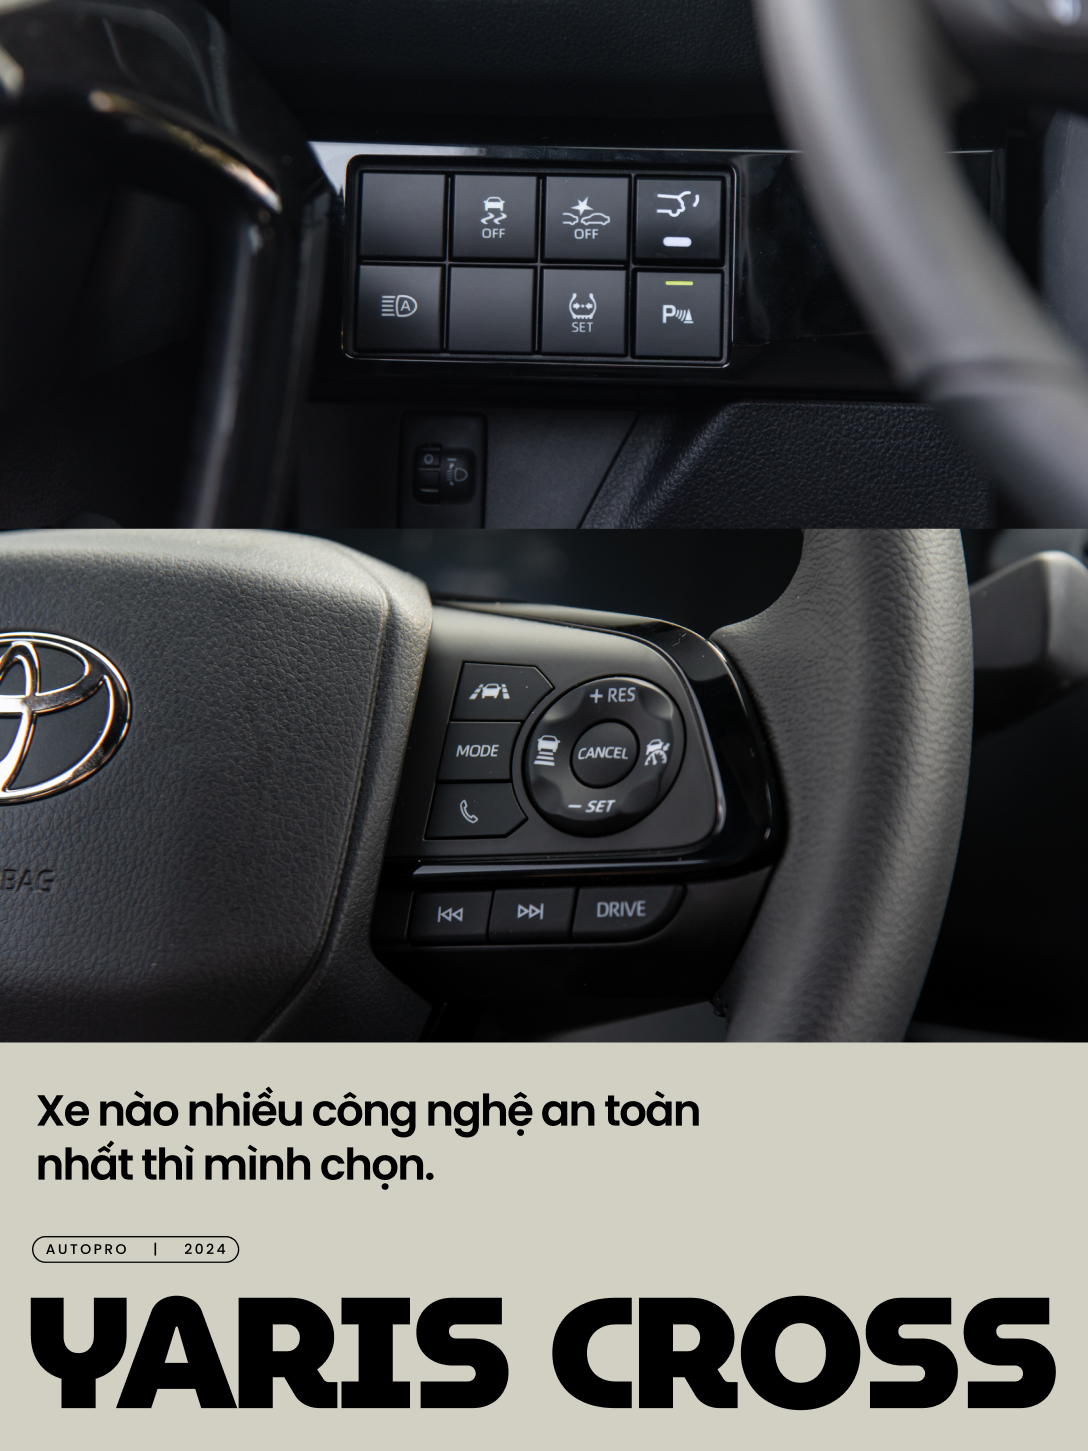 Fan công nghệ bán VinFast VF 8 mua Toyota Yaris Cross: ‘Cần xe nhỏ cho tiện dù còn vài điểm trừ nhưng được cái full an toàn’- Ảnh 2.